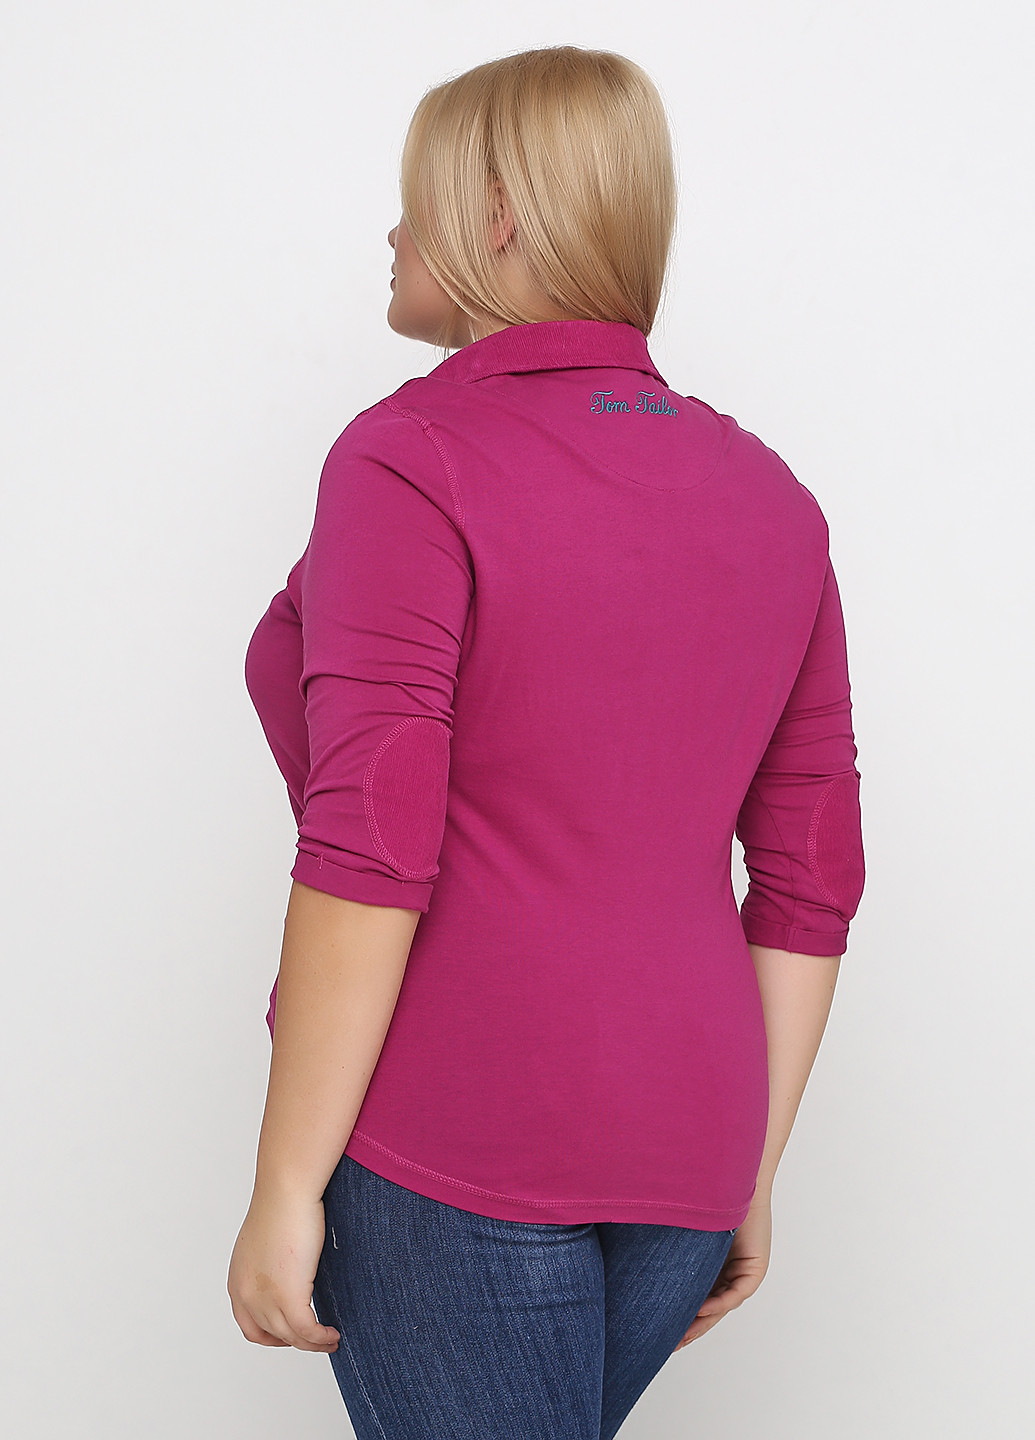 Фуксиновая (цвета Фуксия) женская футболка-поло Tom Tailor с надписью